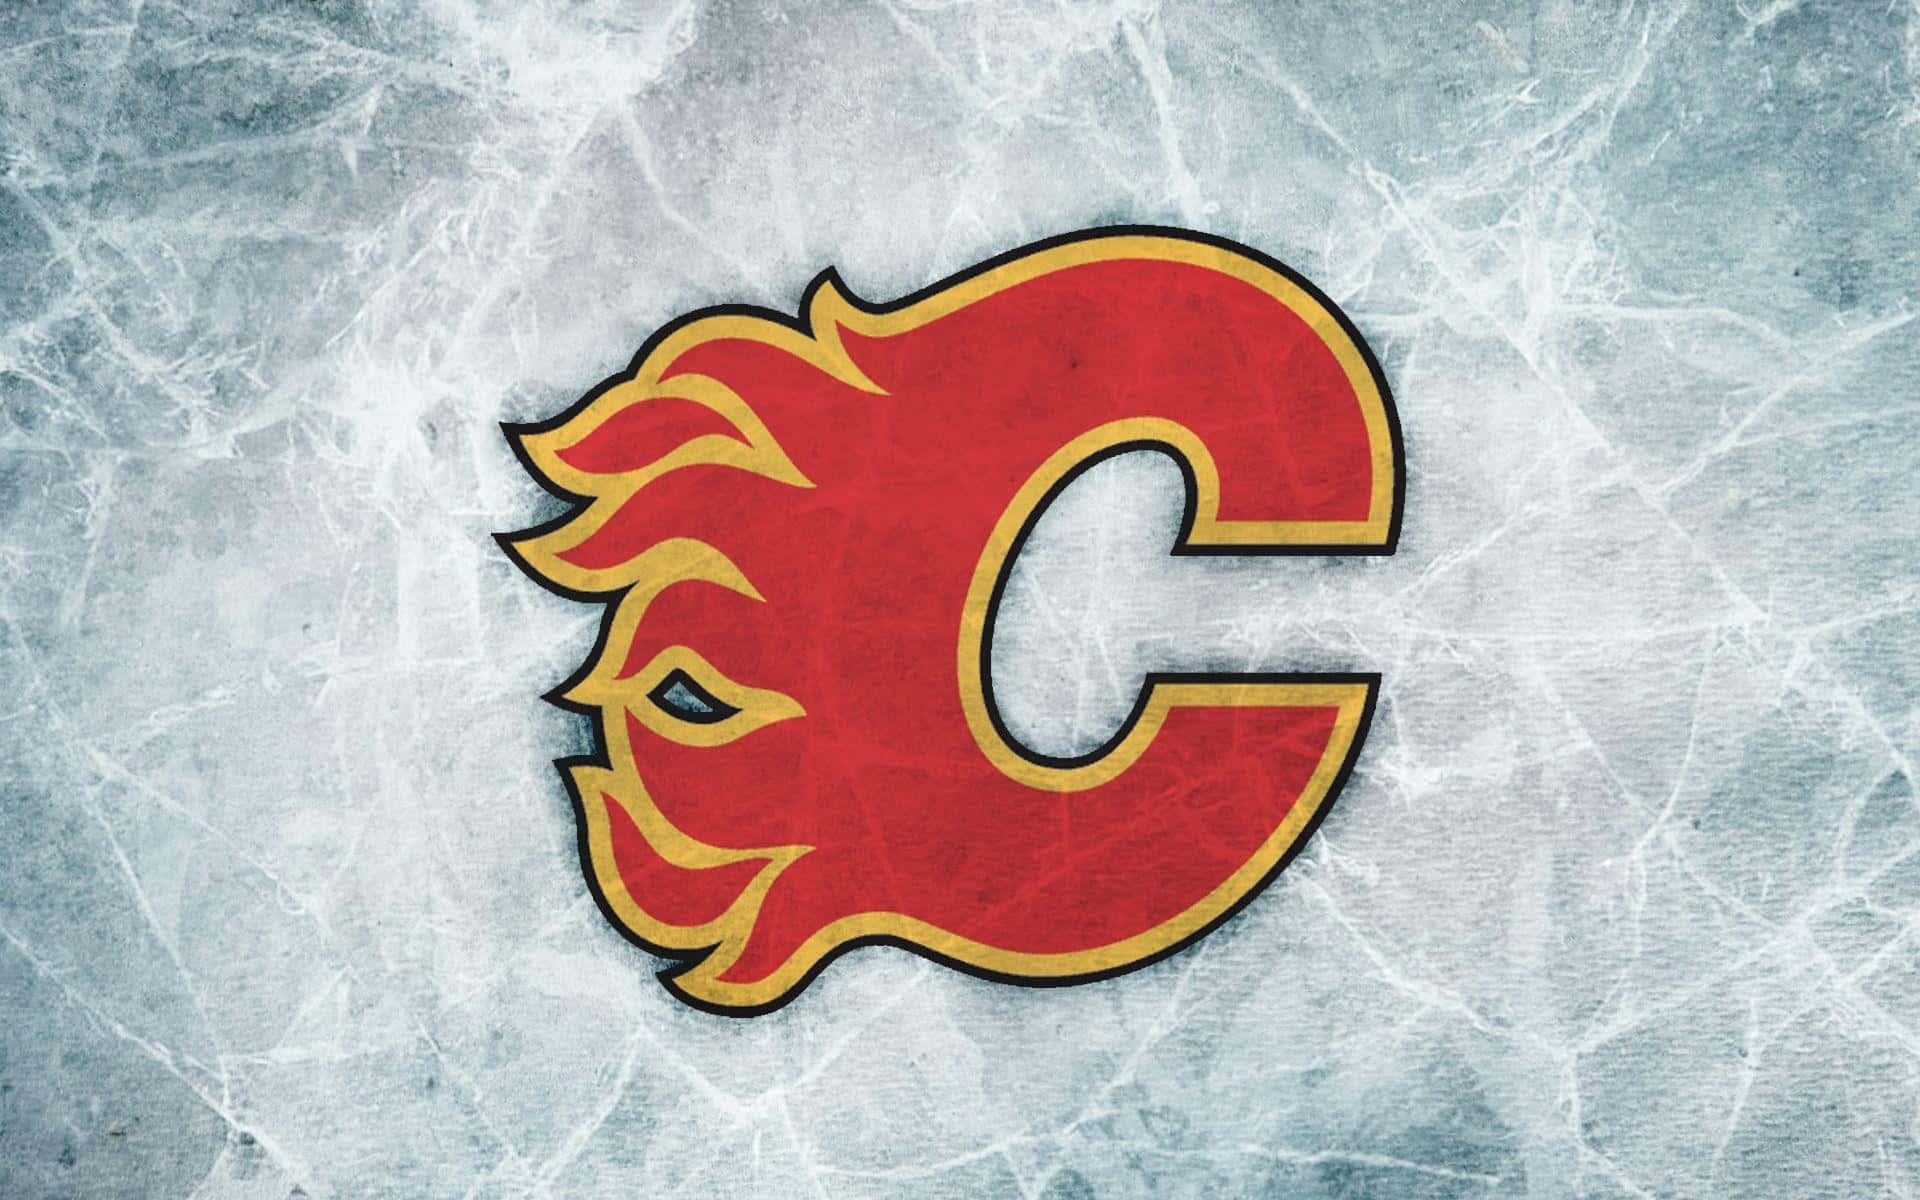 Unlogotipo De Los Calgary Flames En El Hielo